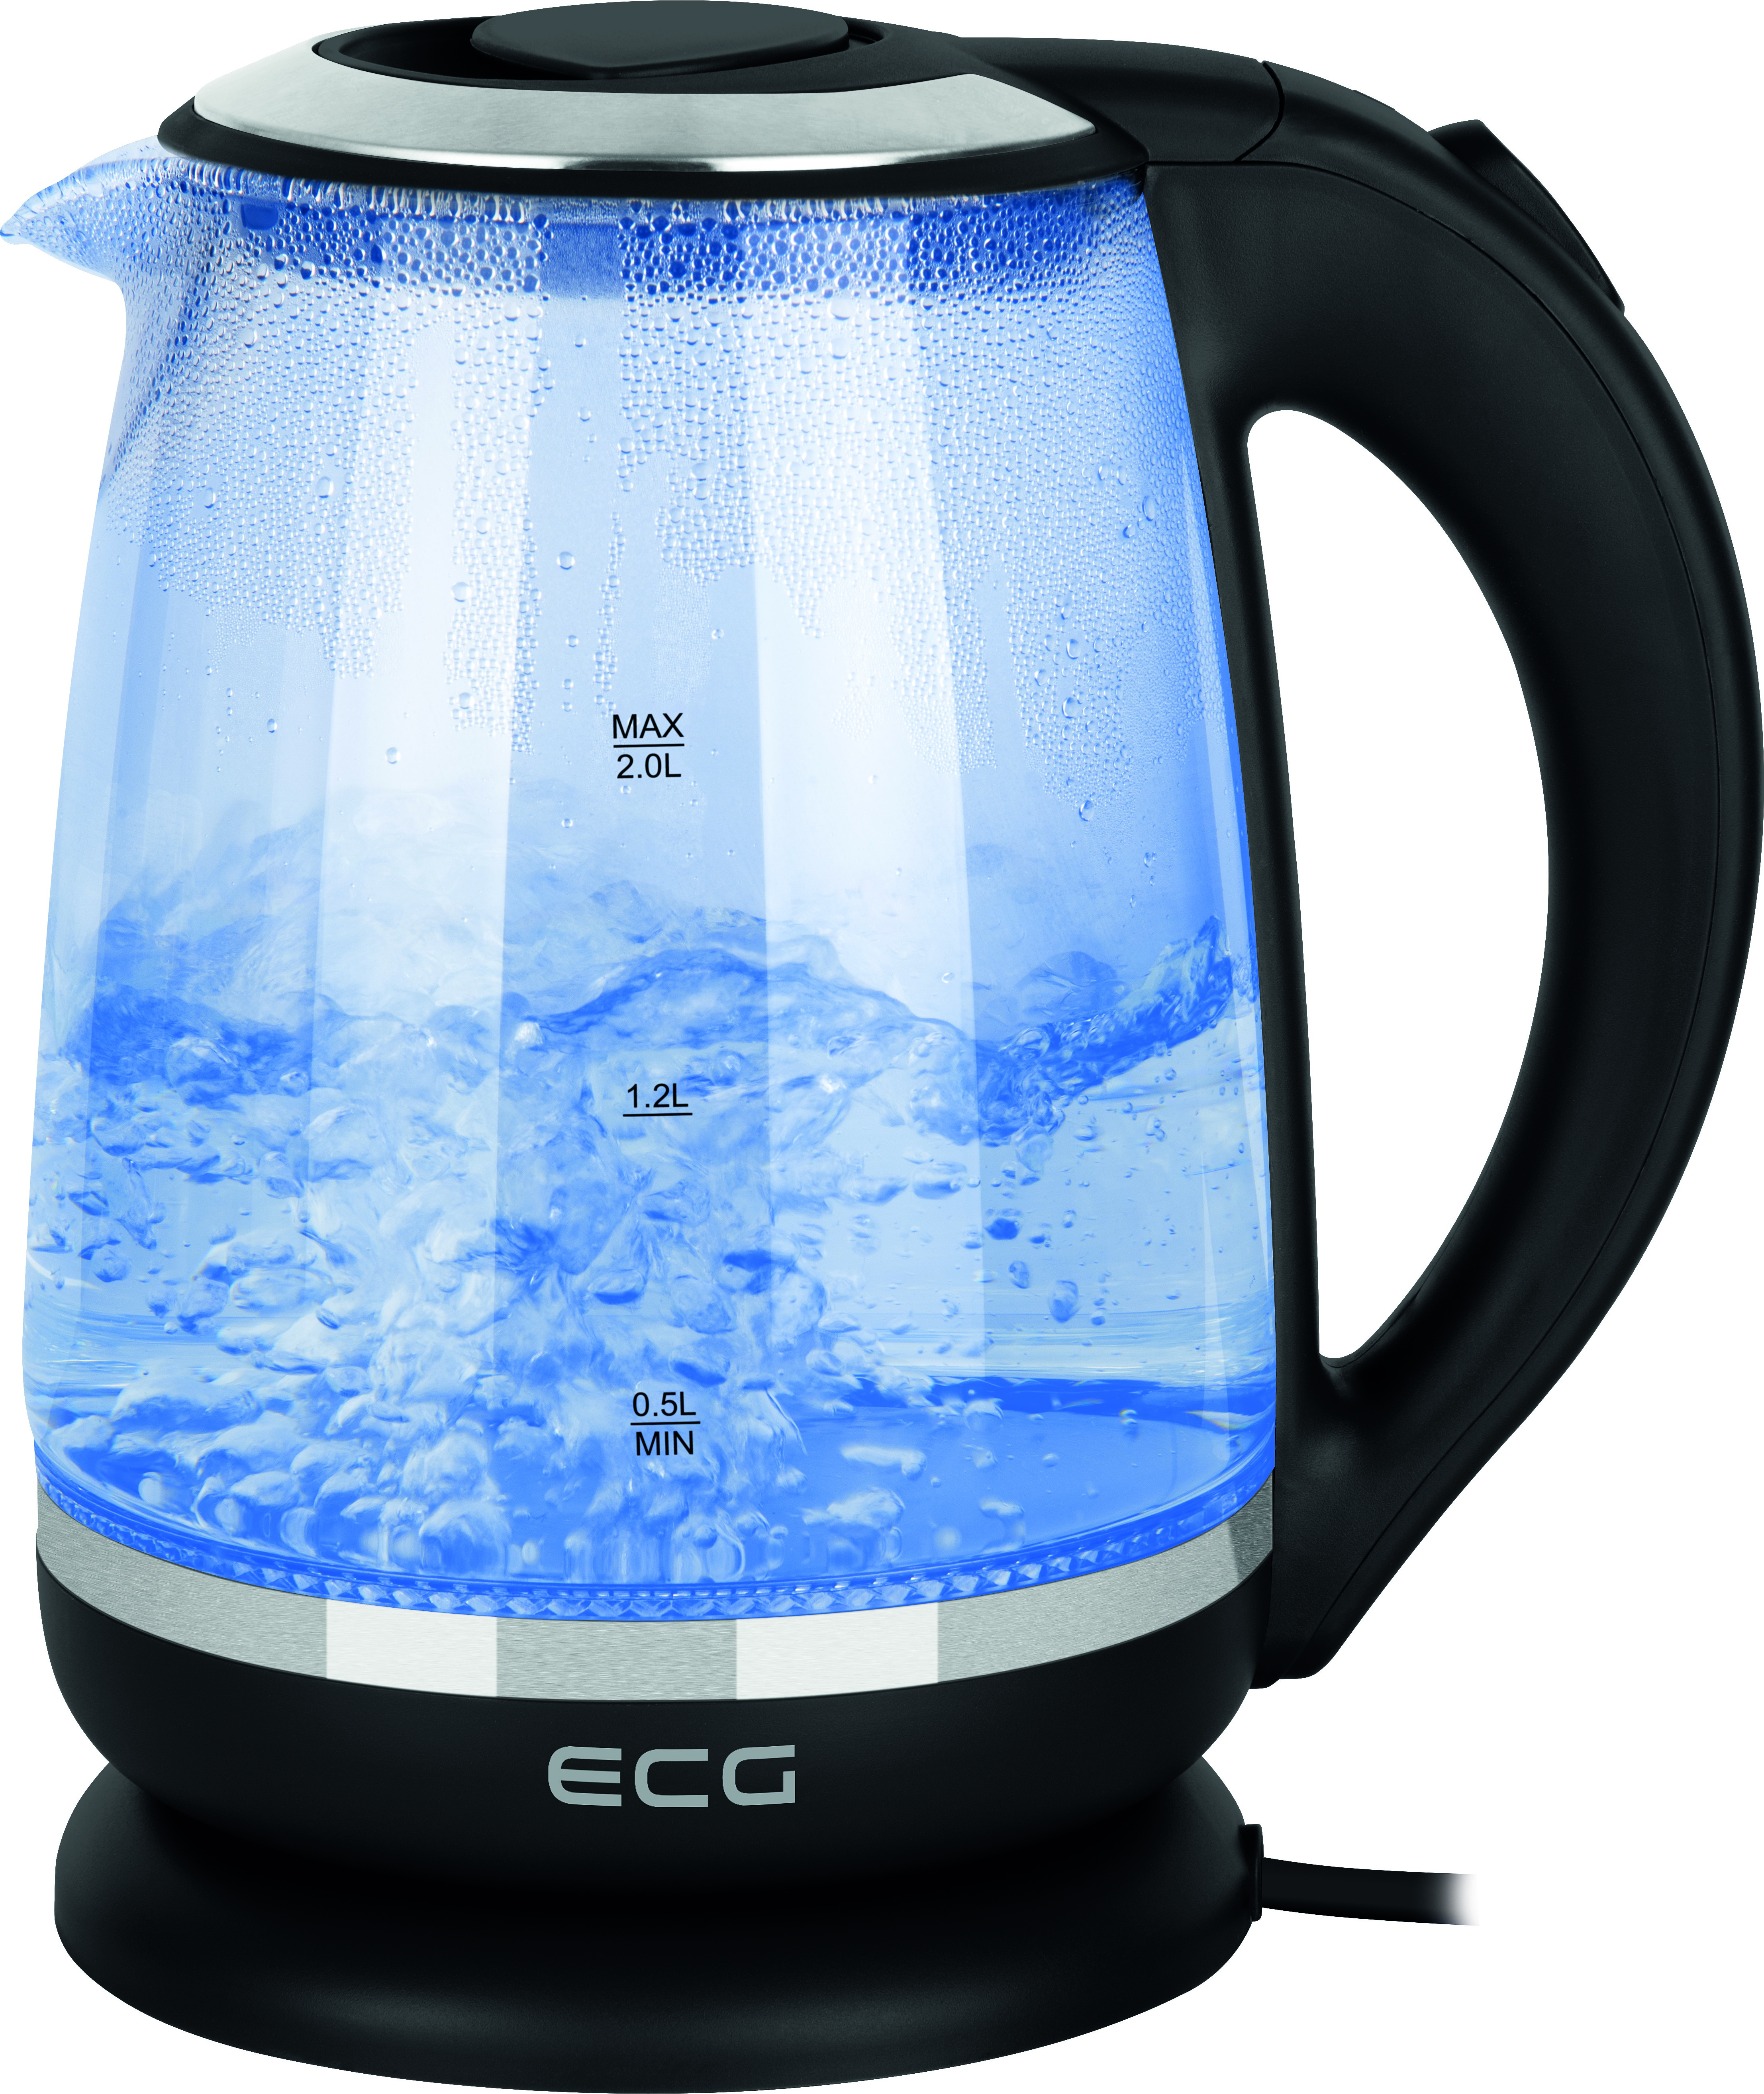 | Wasserkocher, Wasserkocher Transparent Glass RK 2080 ECG / Schwarz |